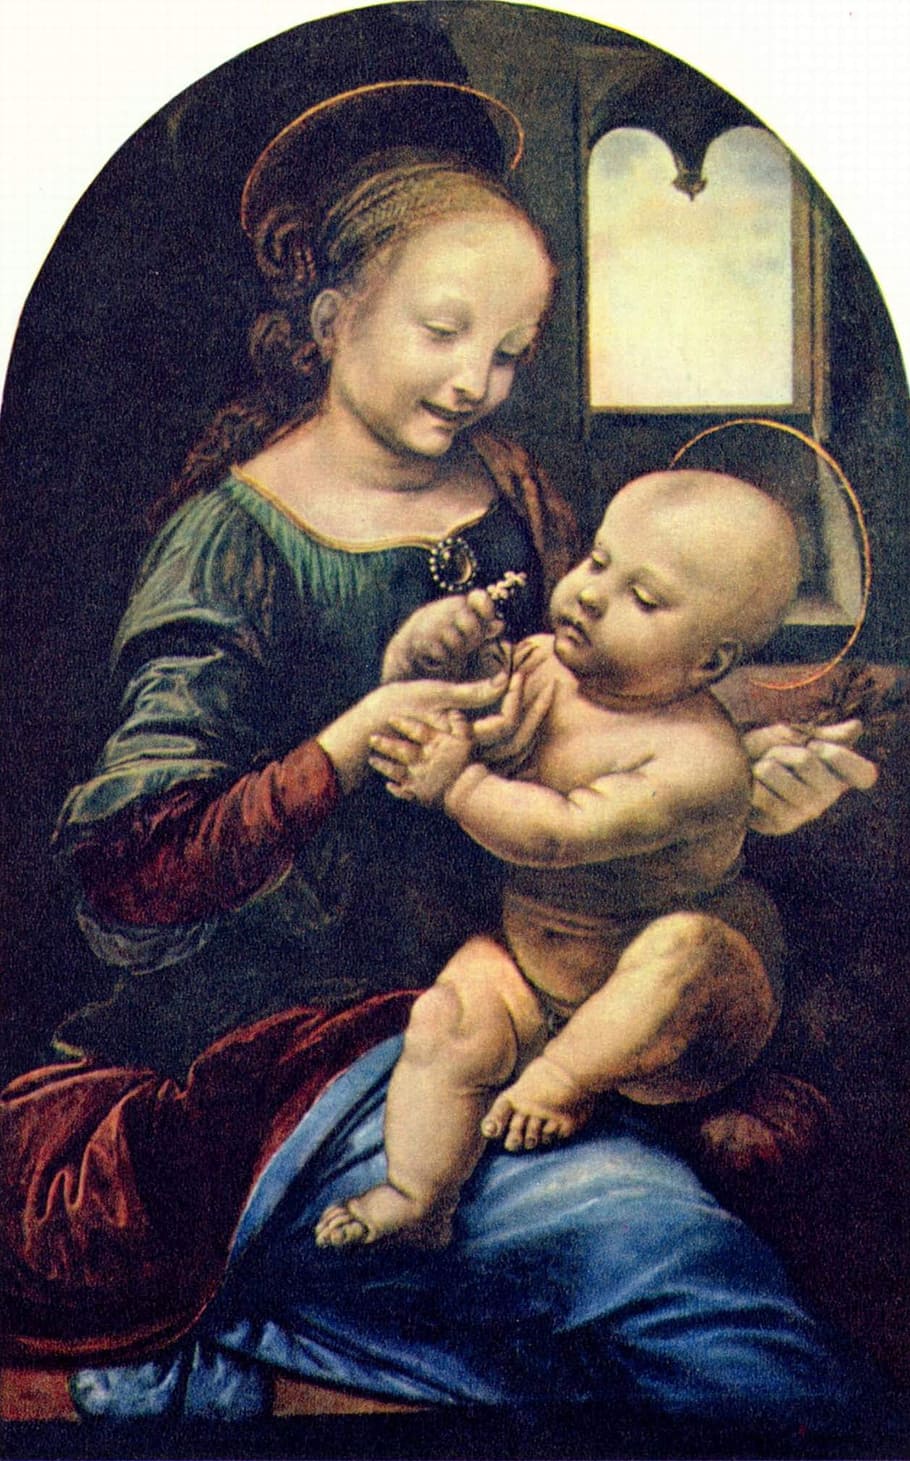 lukisan religius, perawan dan anak, leonardo de vinci, boiler dan yesus, 1478-1482, minyak di atas kayu, lukisan pemuda leonardo, ibu dan anak, emosi, kristus